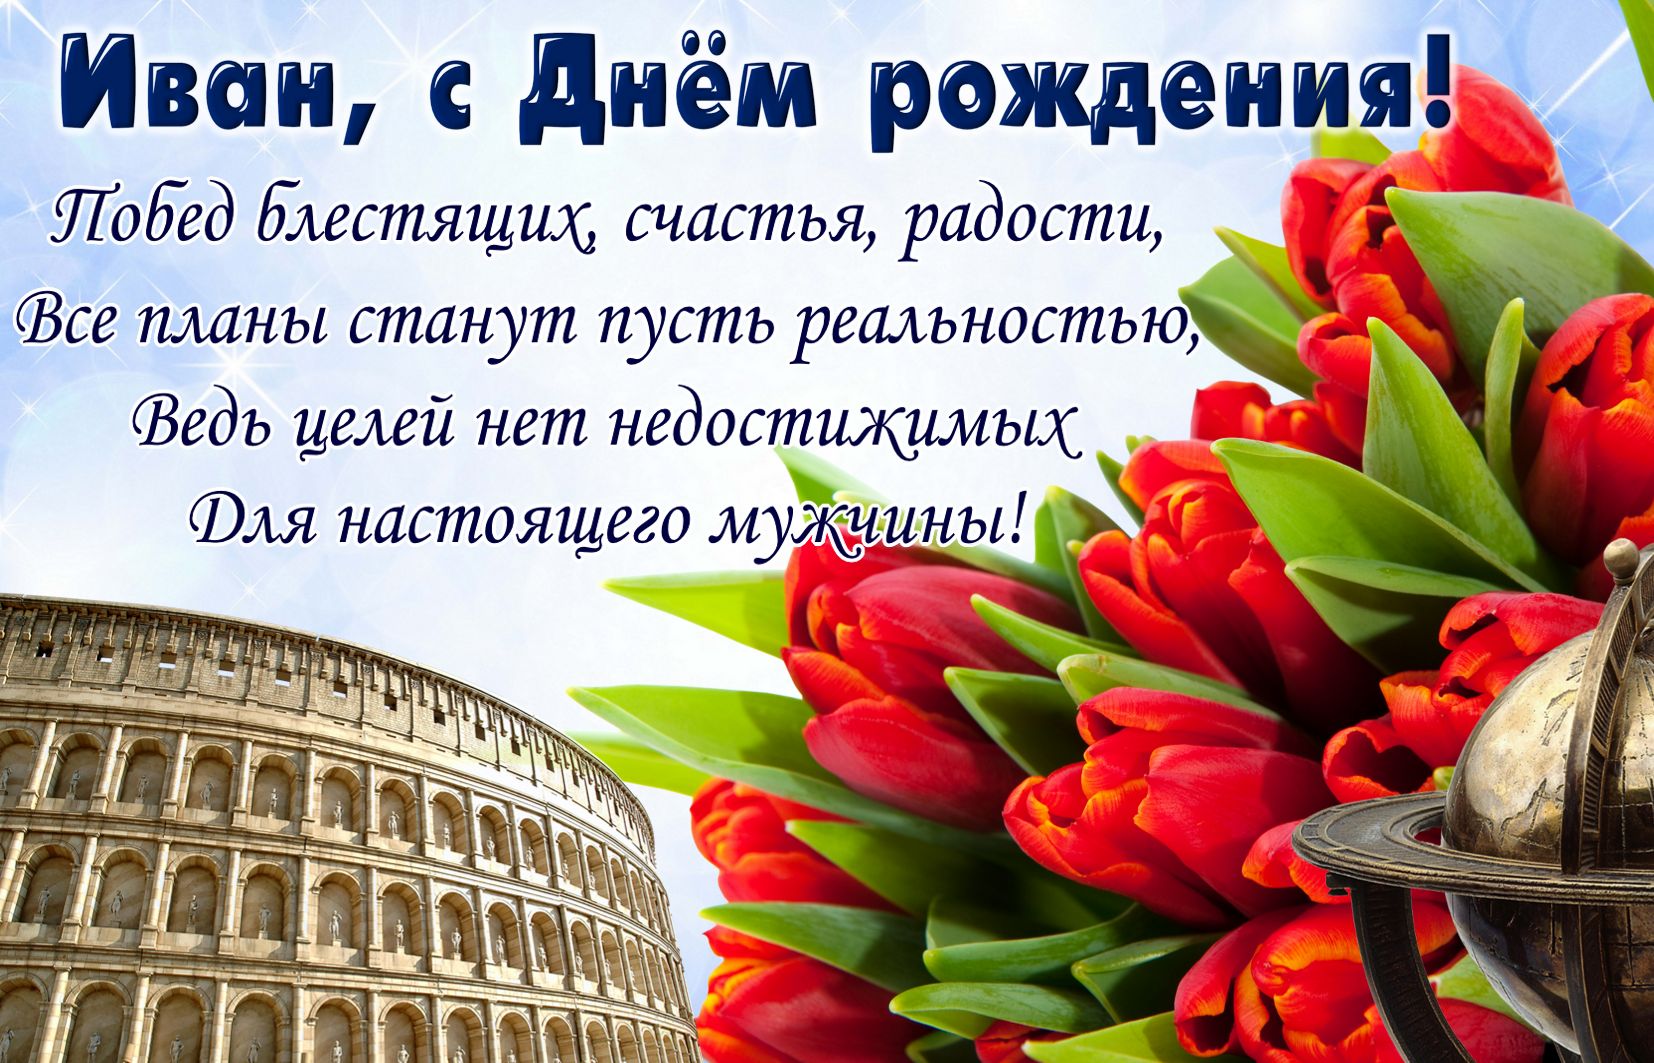 Картинка для Ивана с тюльпанами на приятном фоне на День рождения